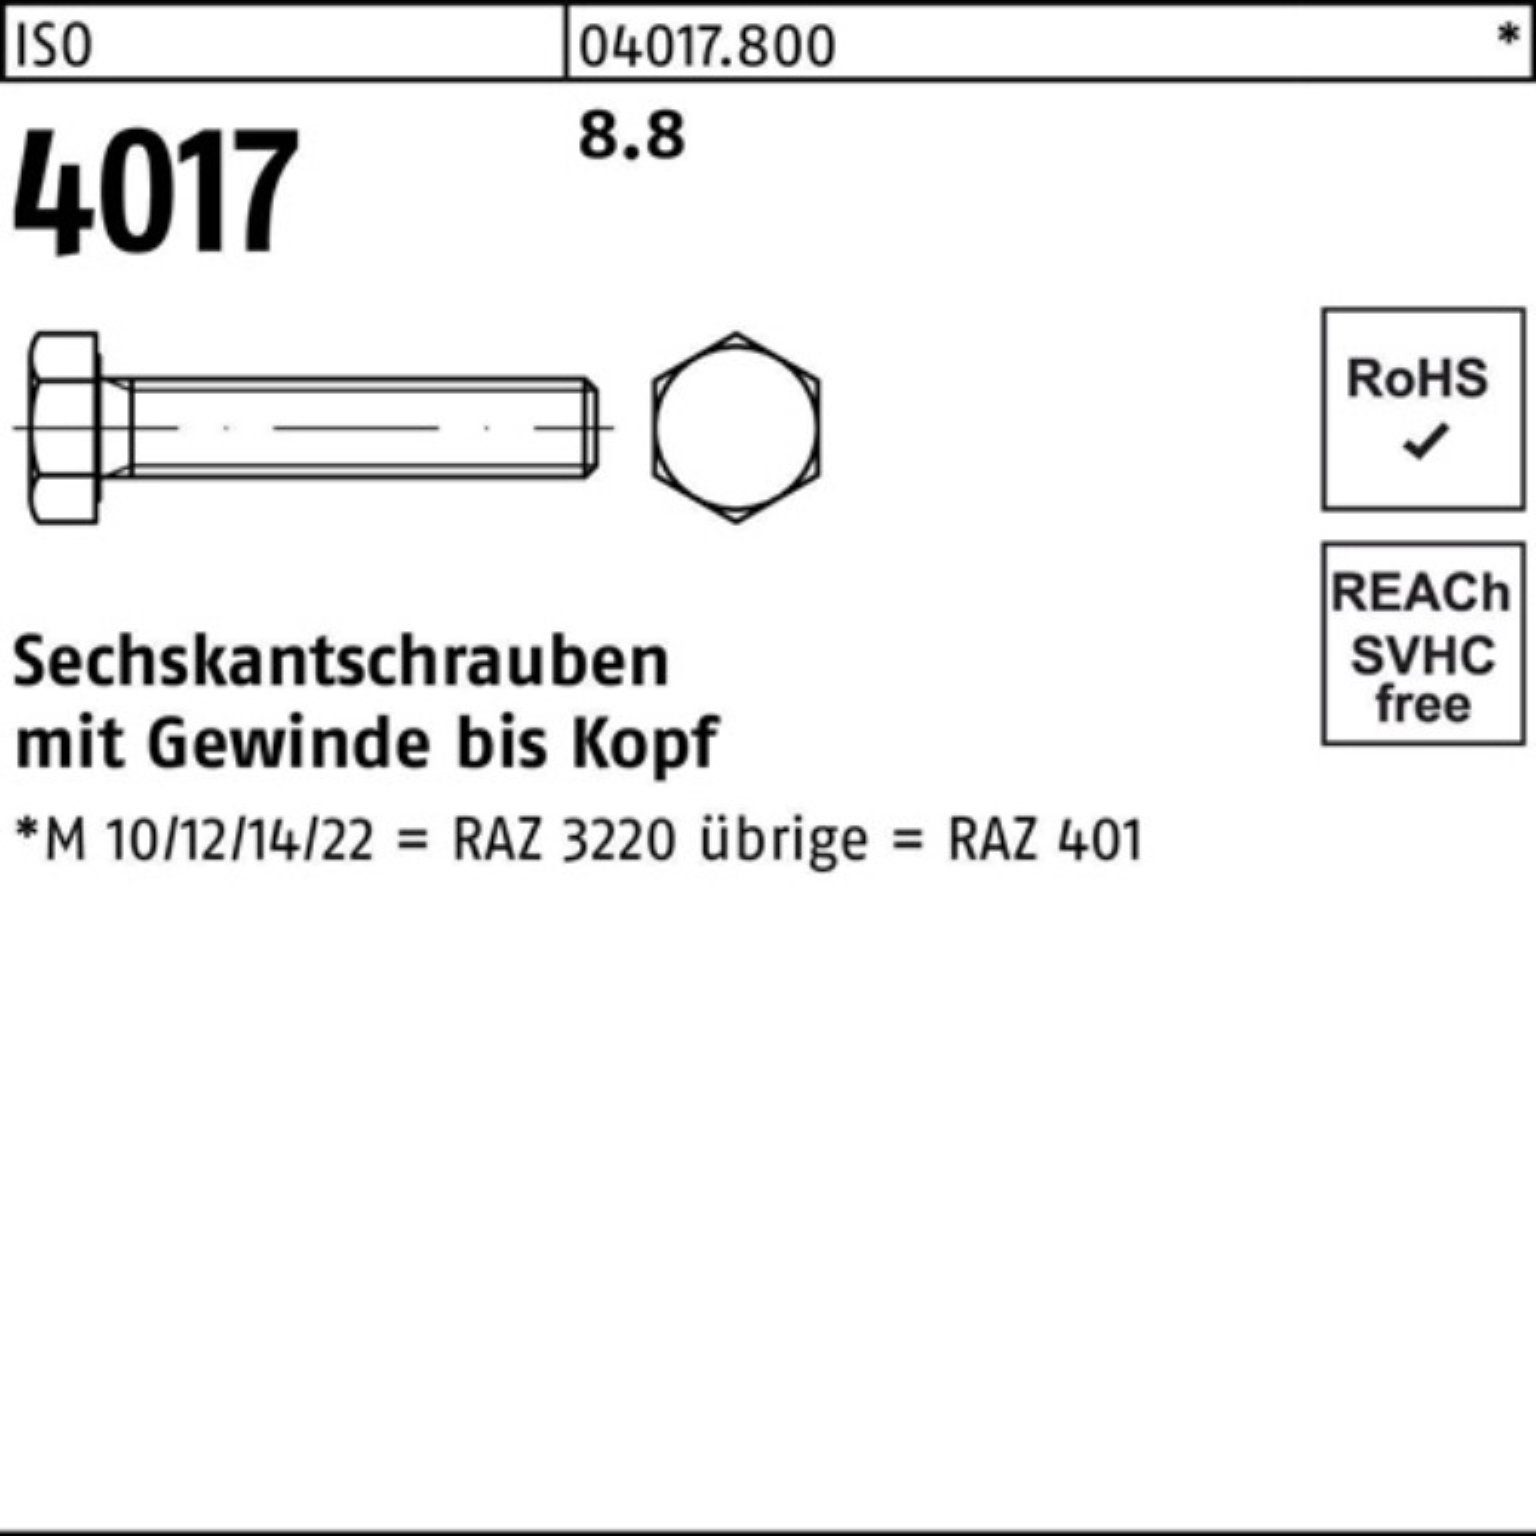 8.8 1 ISO 150 Pack VG Bufab 4017 Sechskantschraube 100er 401 ISO Stück Sechskantschraube M30x